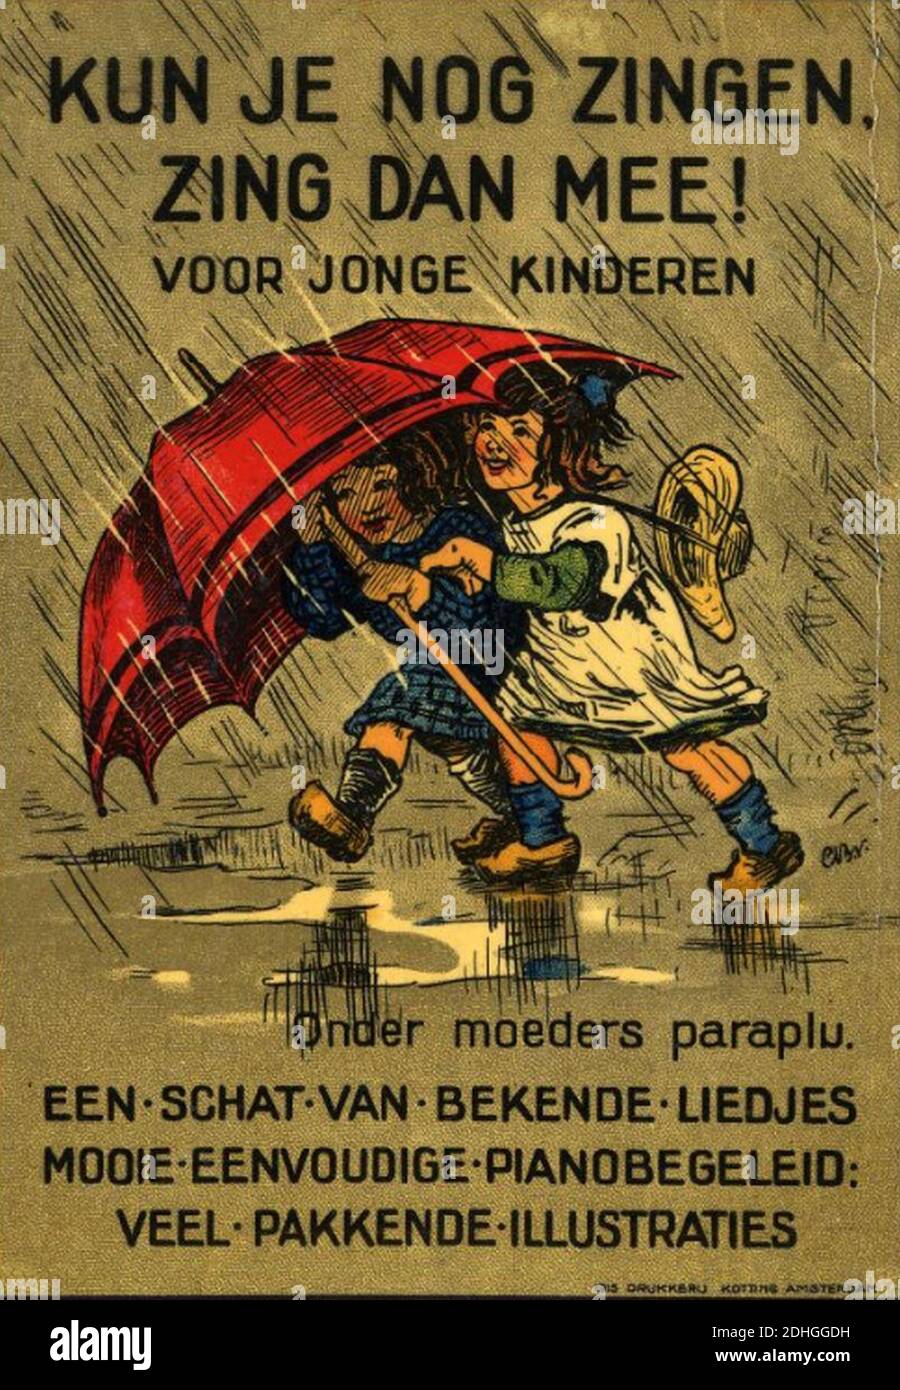 Kun-je-nog-zingen-jonge-kinderen-reclame-poster-1915. Foto Stock